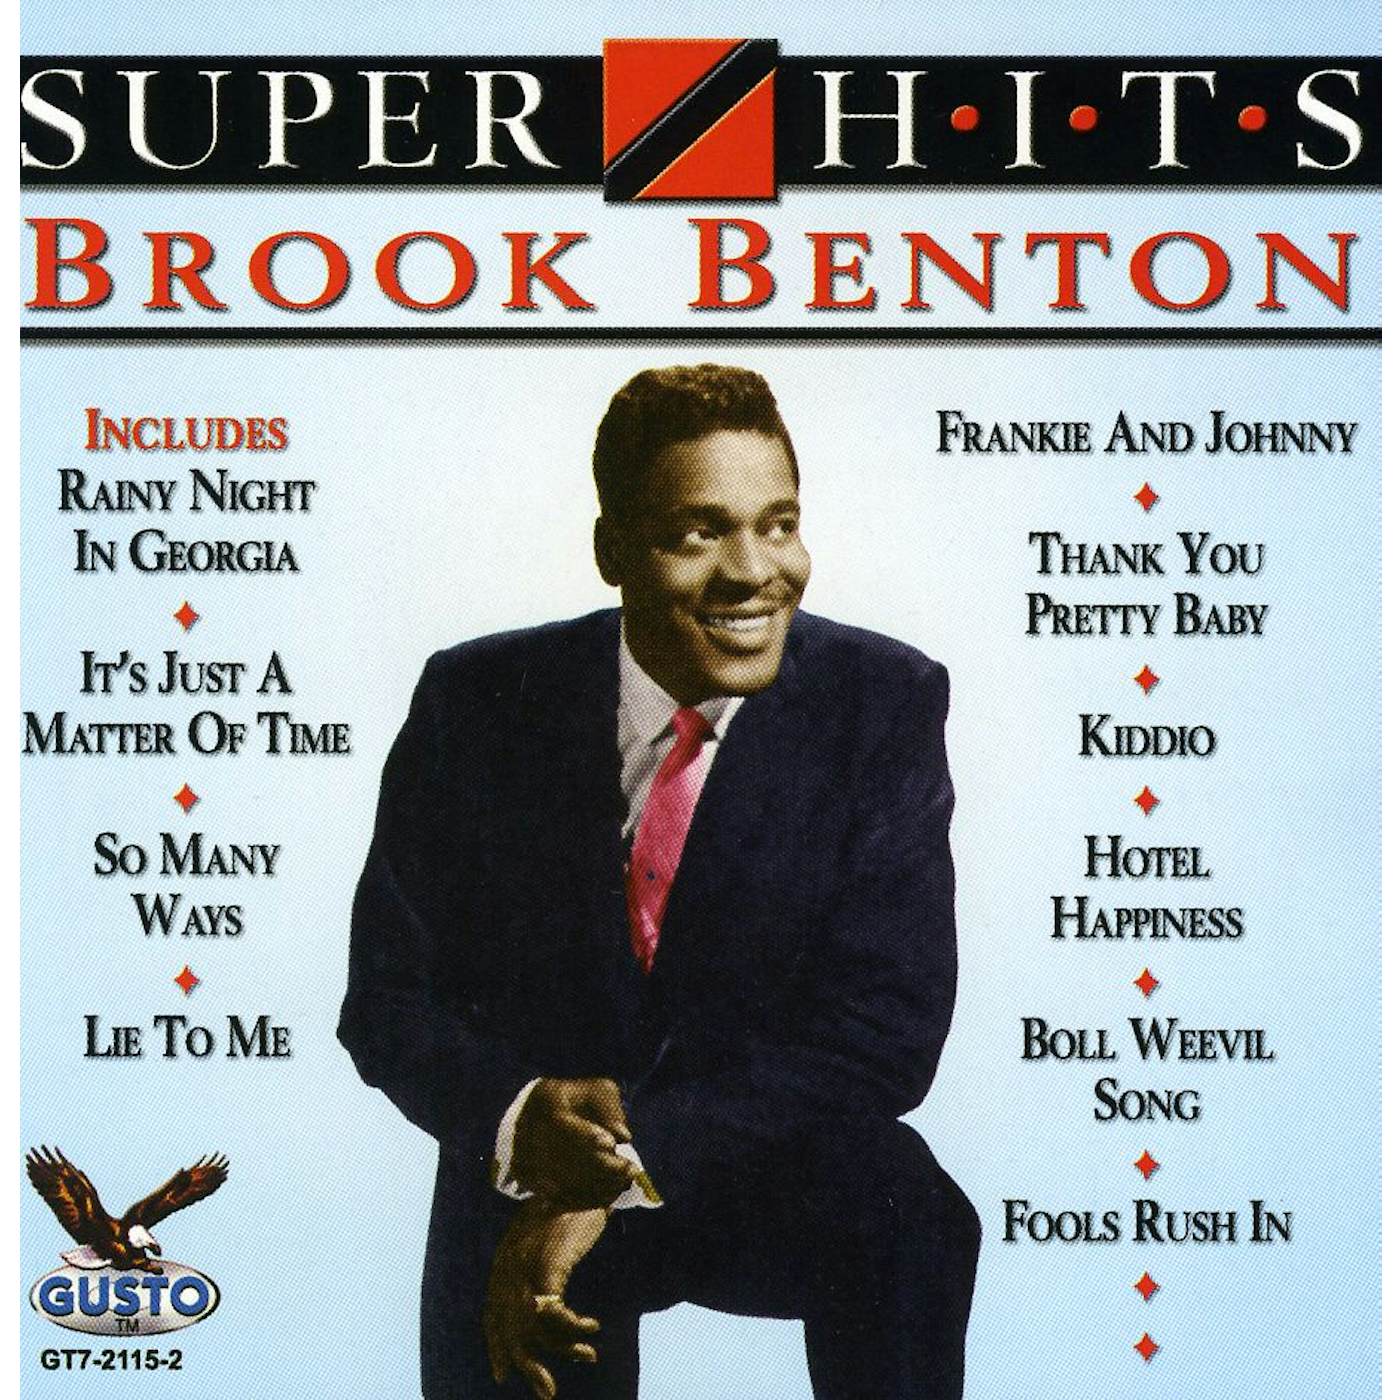 Brook Benton SUPER HITS CD